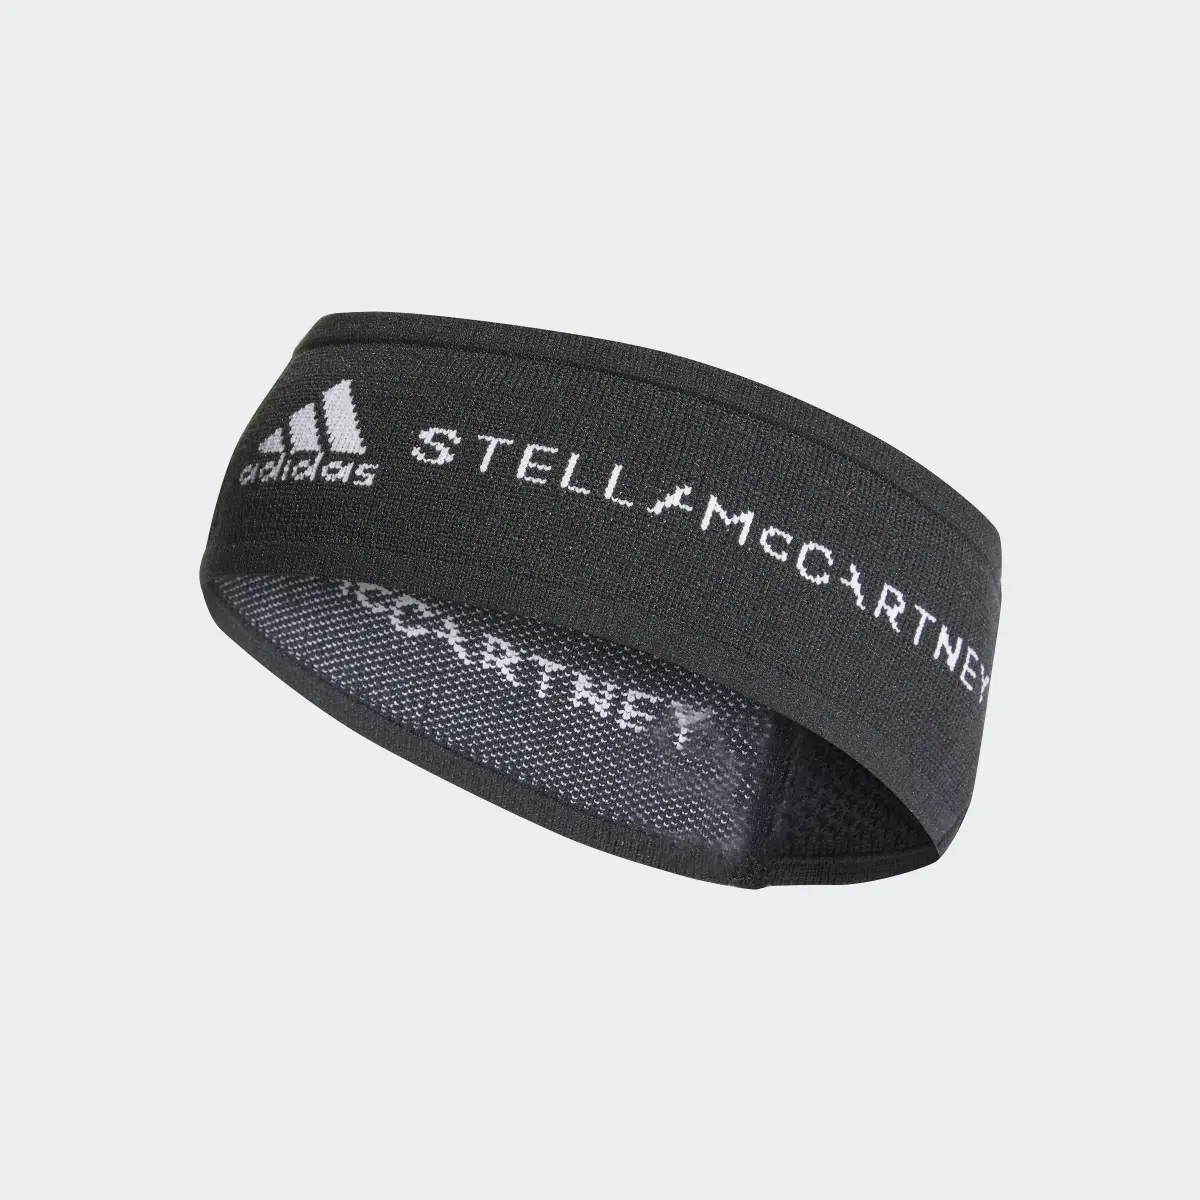 Adidas by Stella McCartney Headband. 2